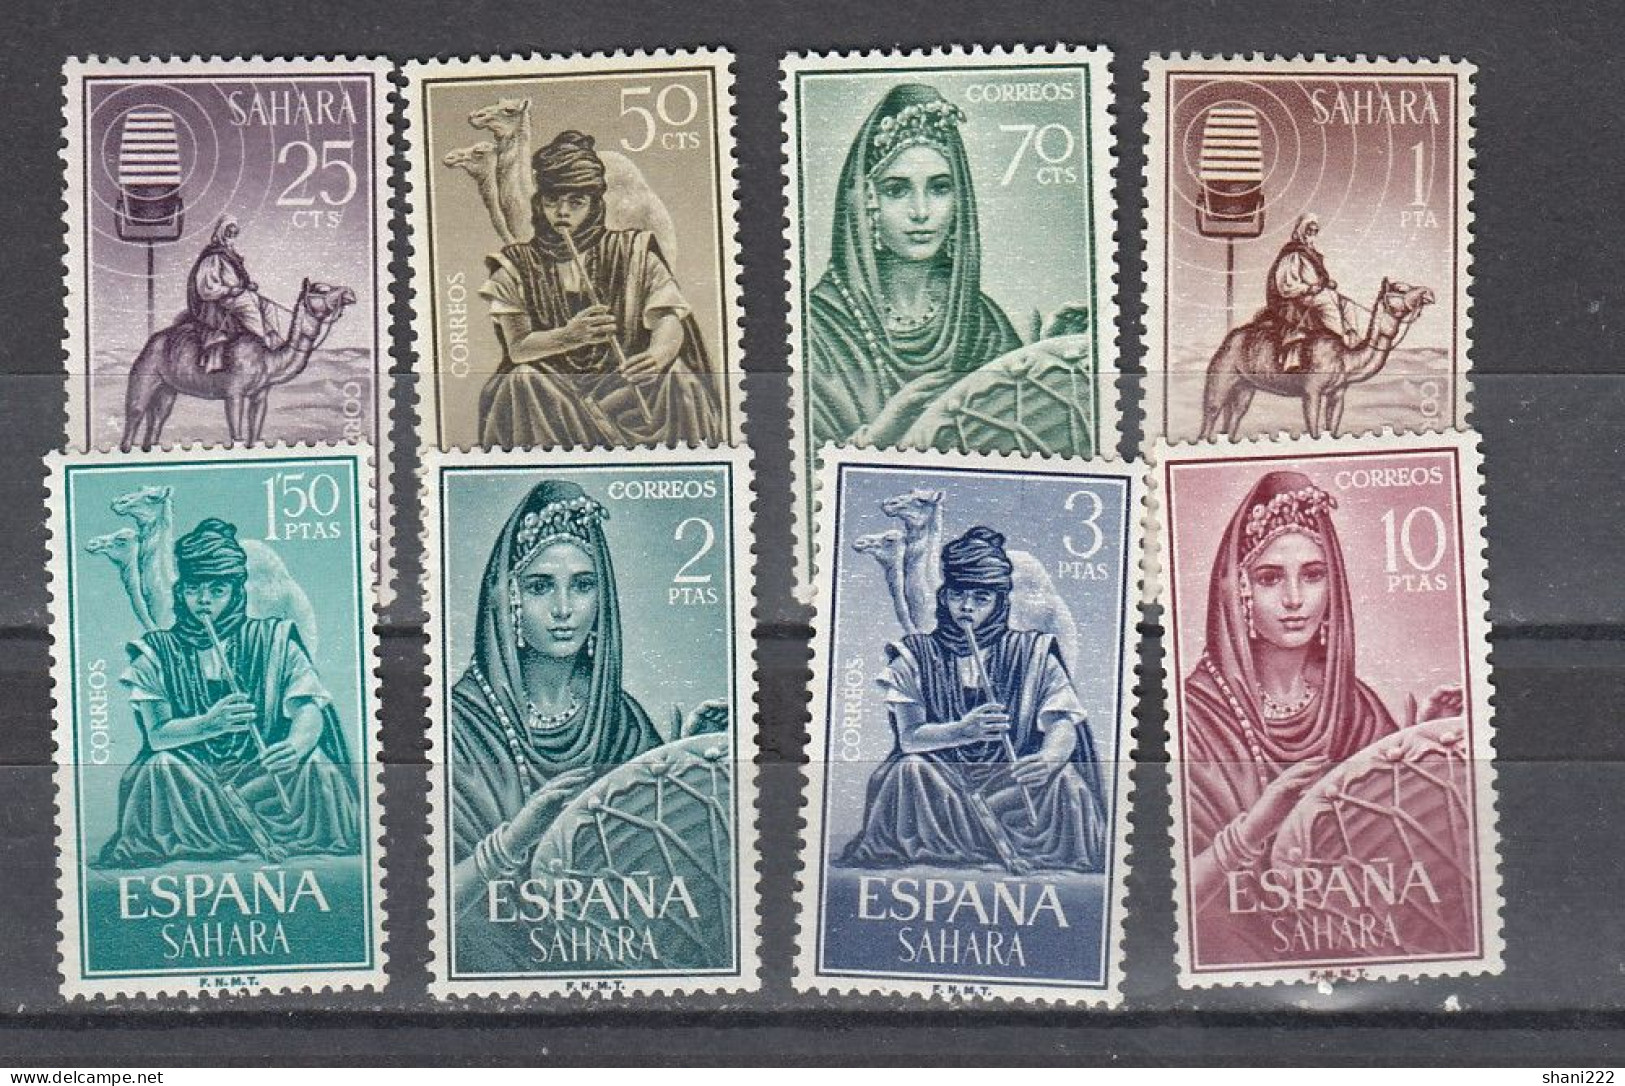 Spanish Sahara 1964 Definitives, Nomads, MNH Set  (e-865) - Spanish Sahara